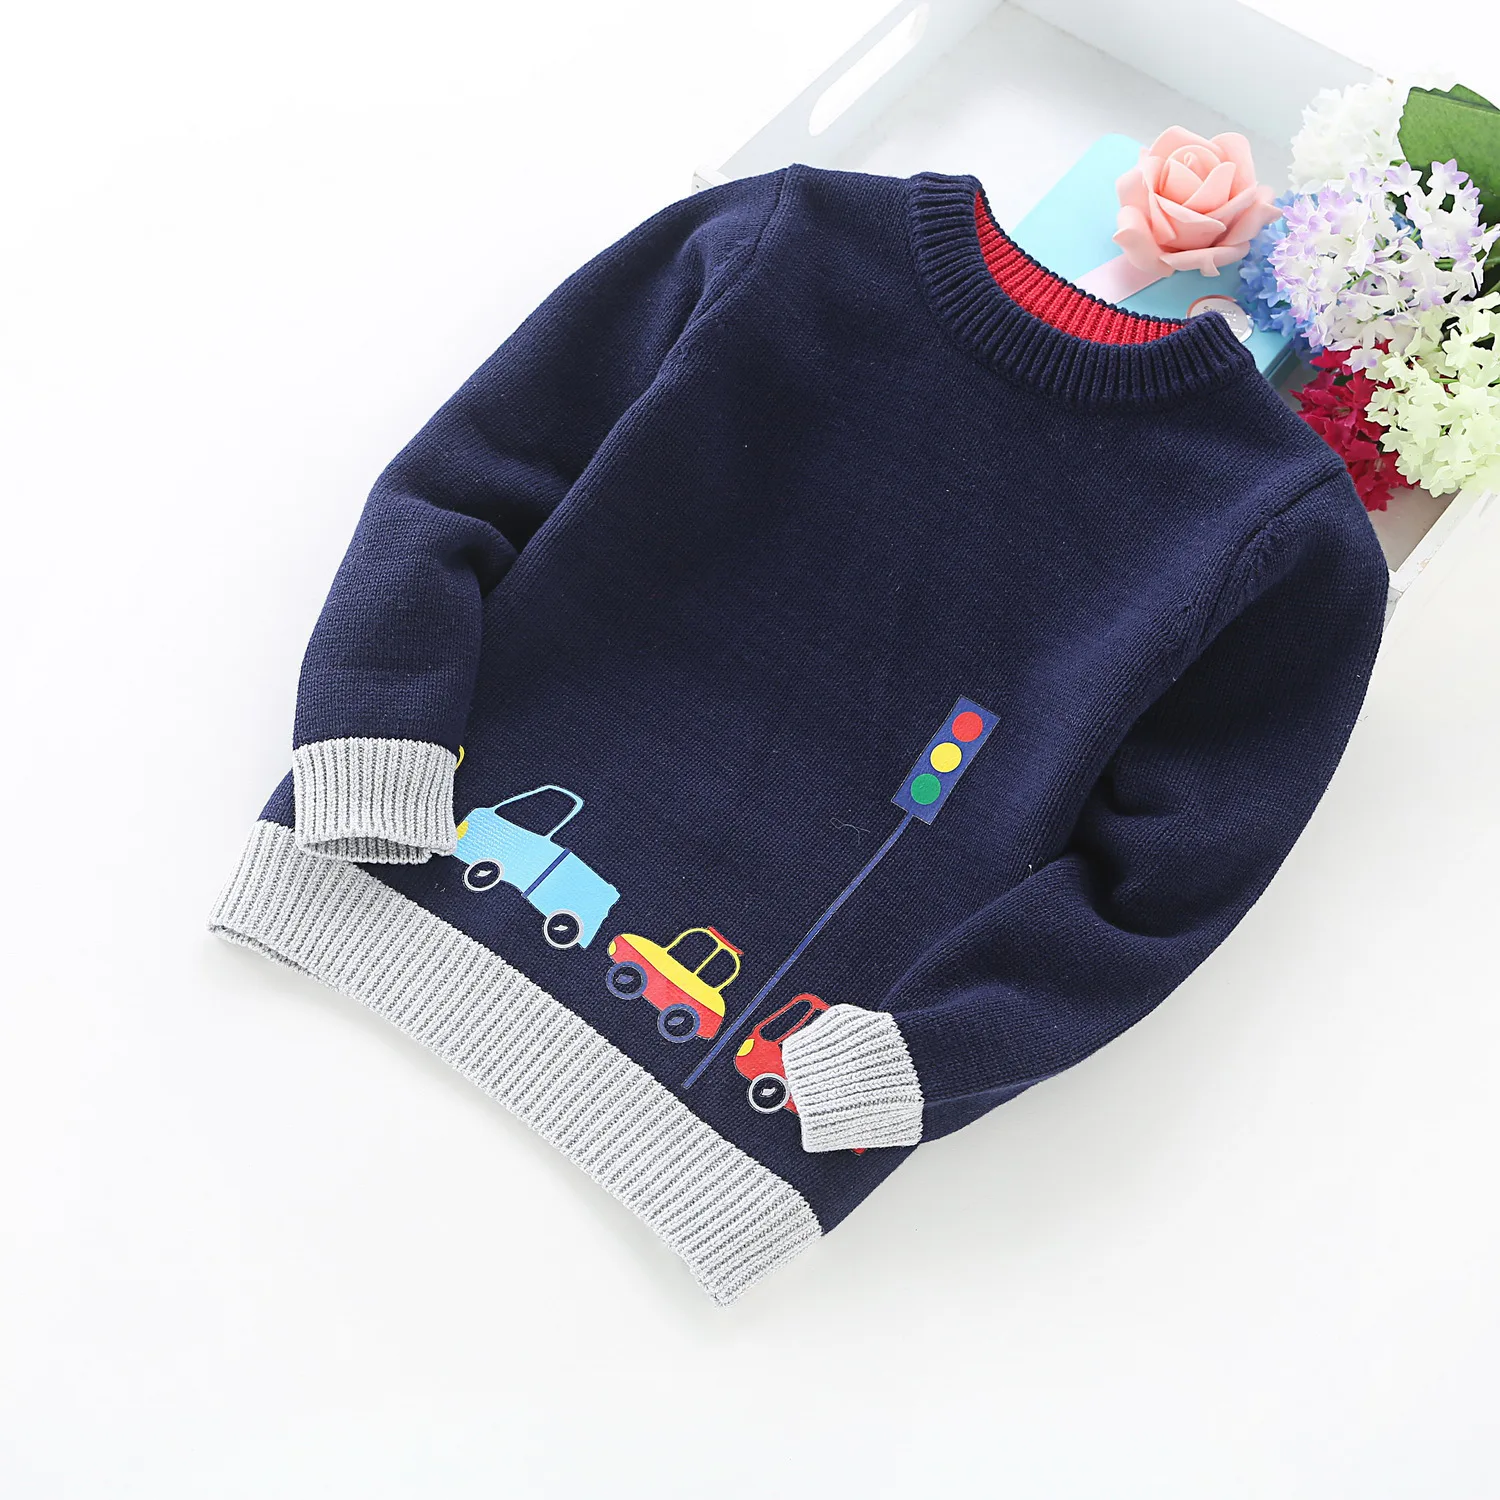 Высокое качество, Новое поступление, свитер для мальчиков Одежда для детей вязаный свитер с машинками пуловер свитер вязаная одежда От 2 до 5 лет детей - Цвет: Синий